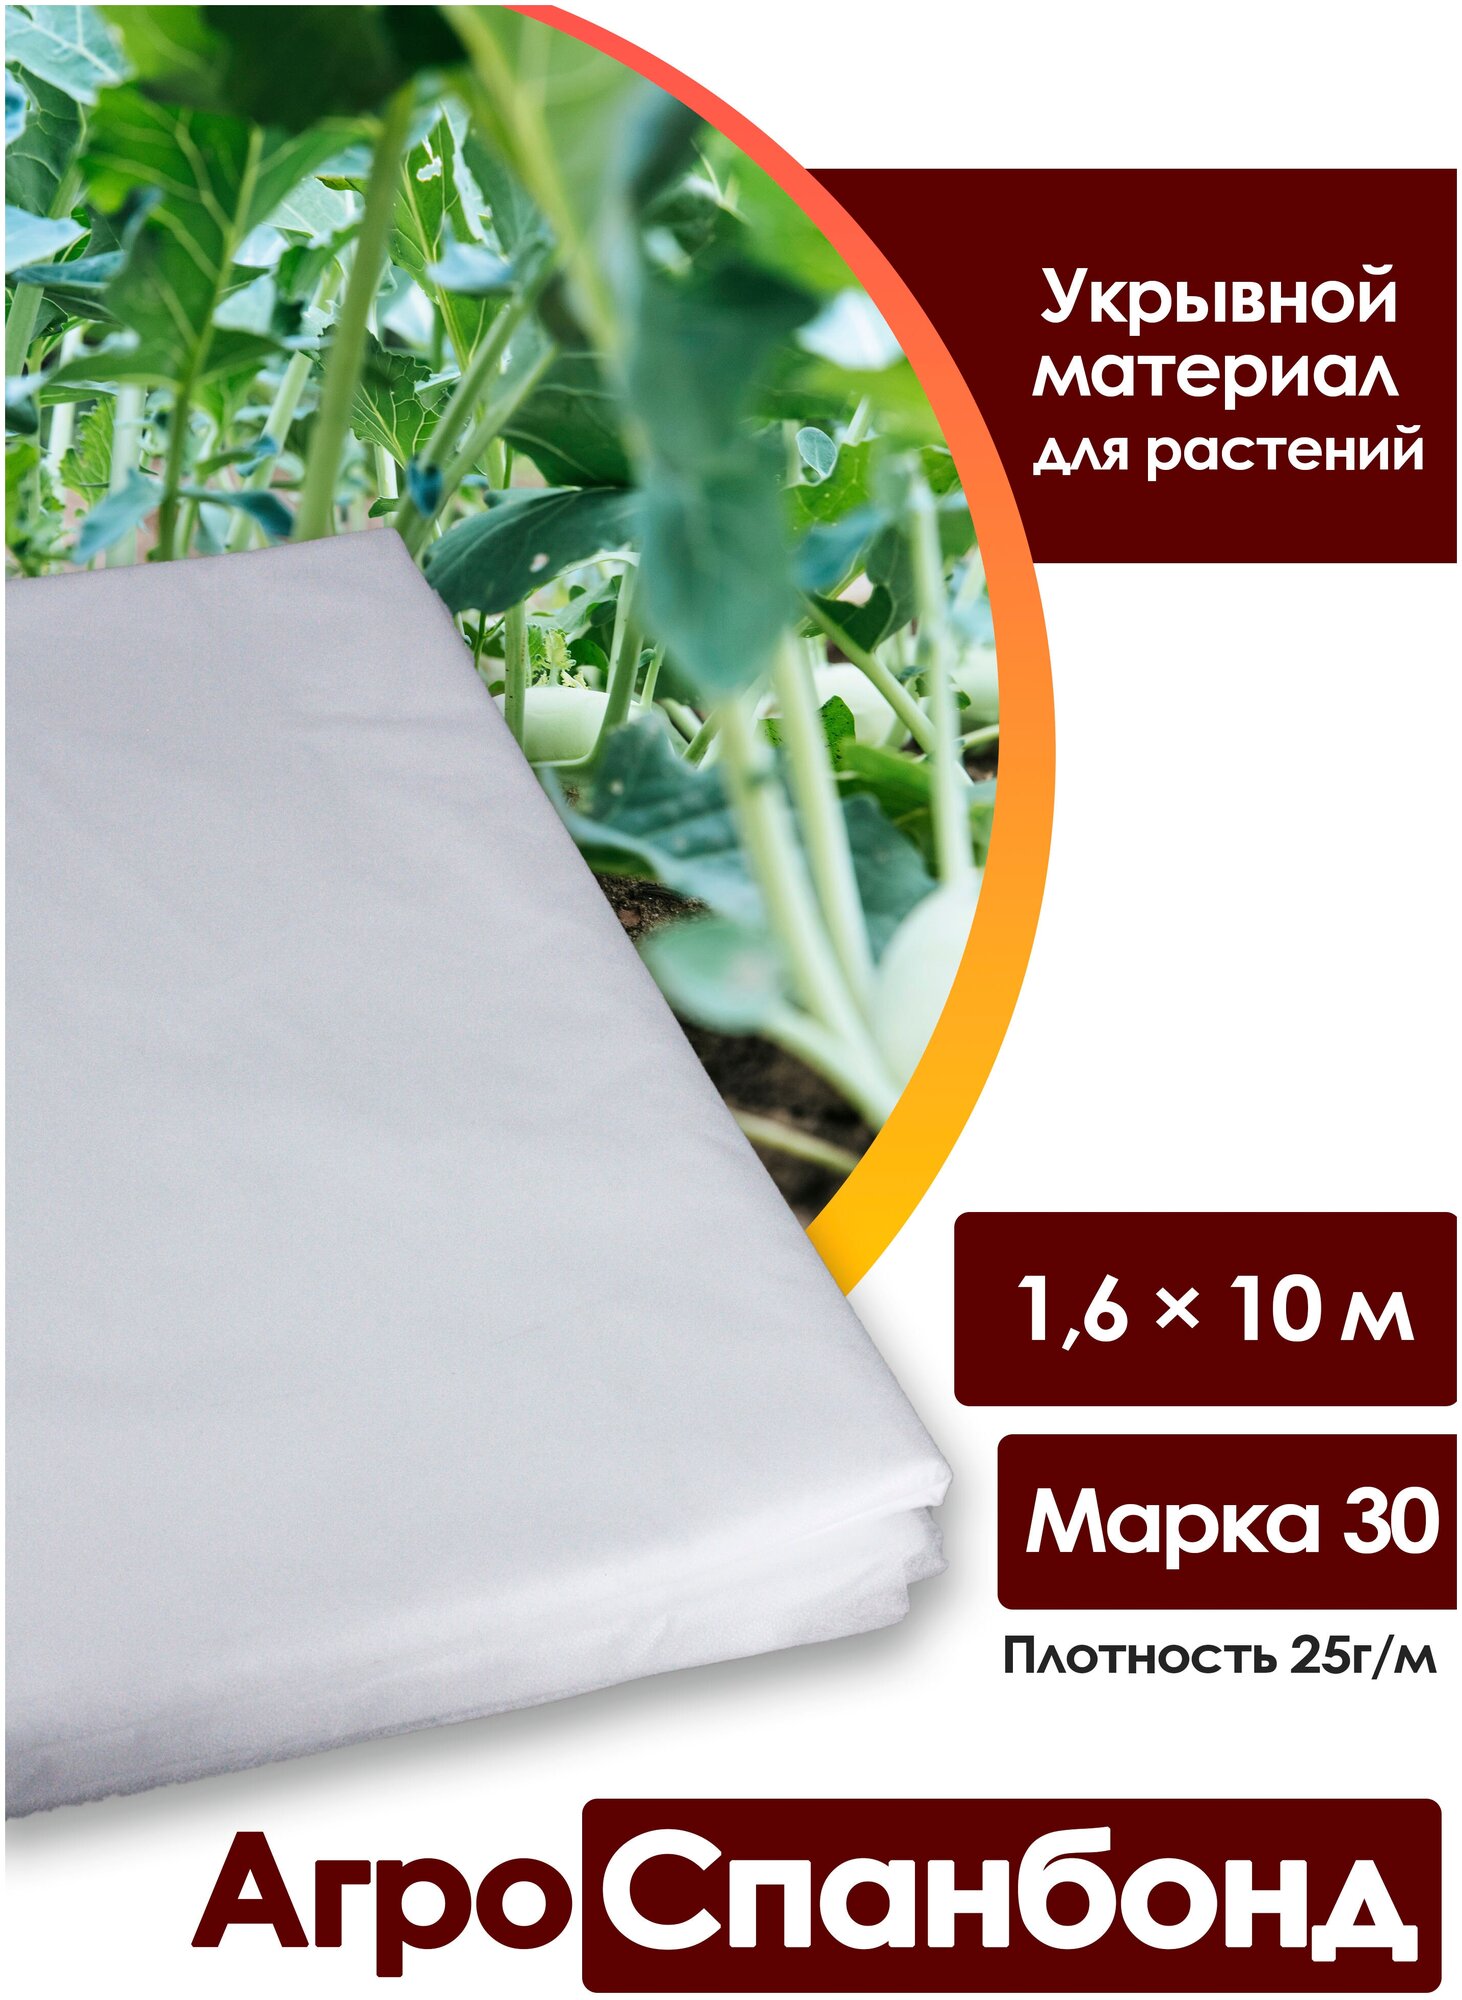 Body Pillow / Спанбонд укрывной 16х10 м плотность 25 г/м2 марка 